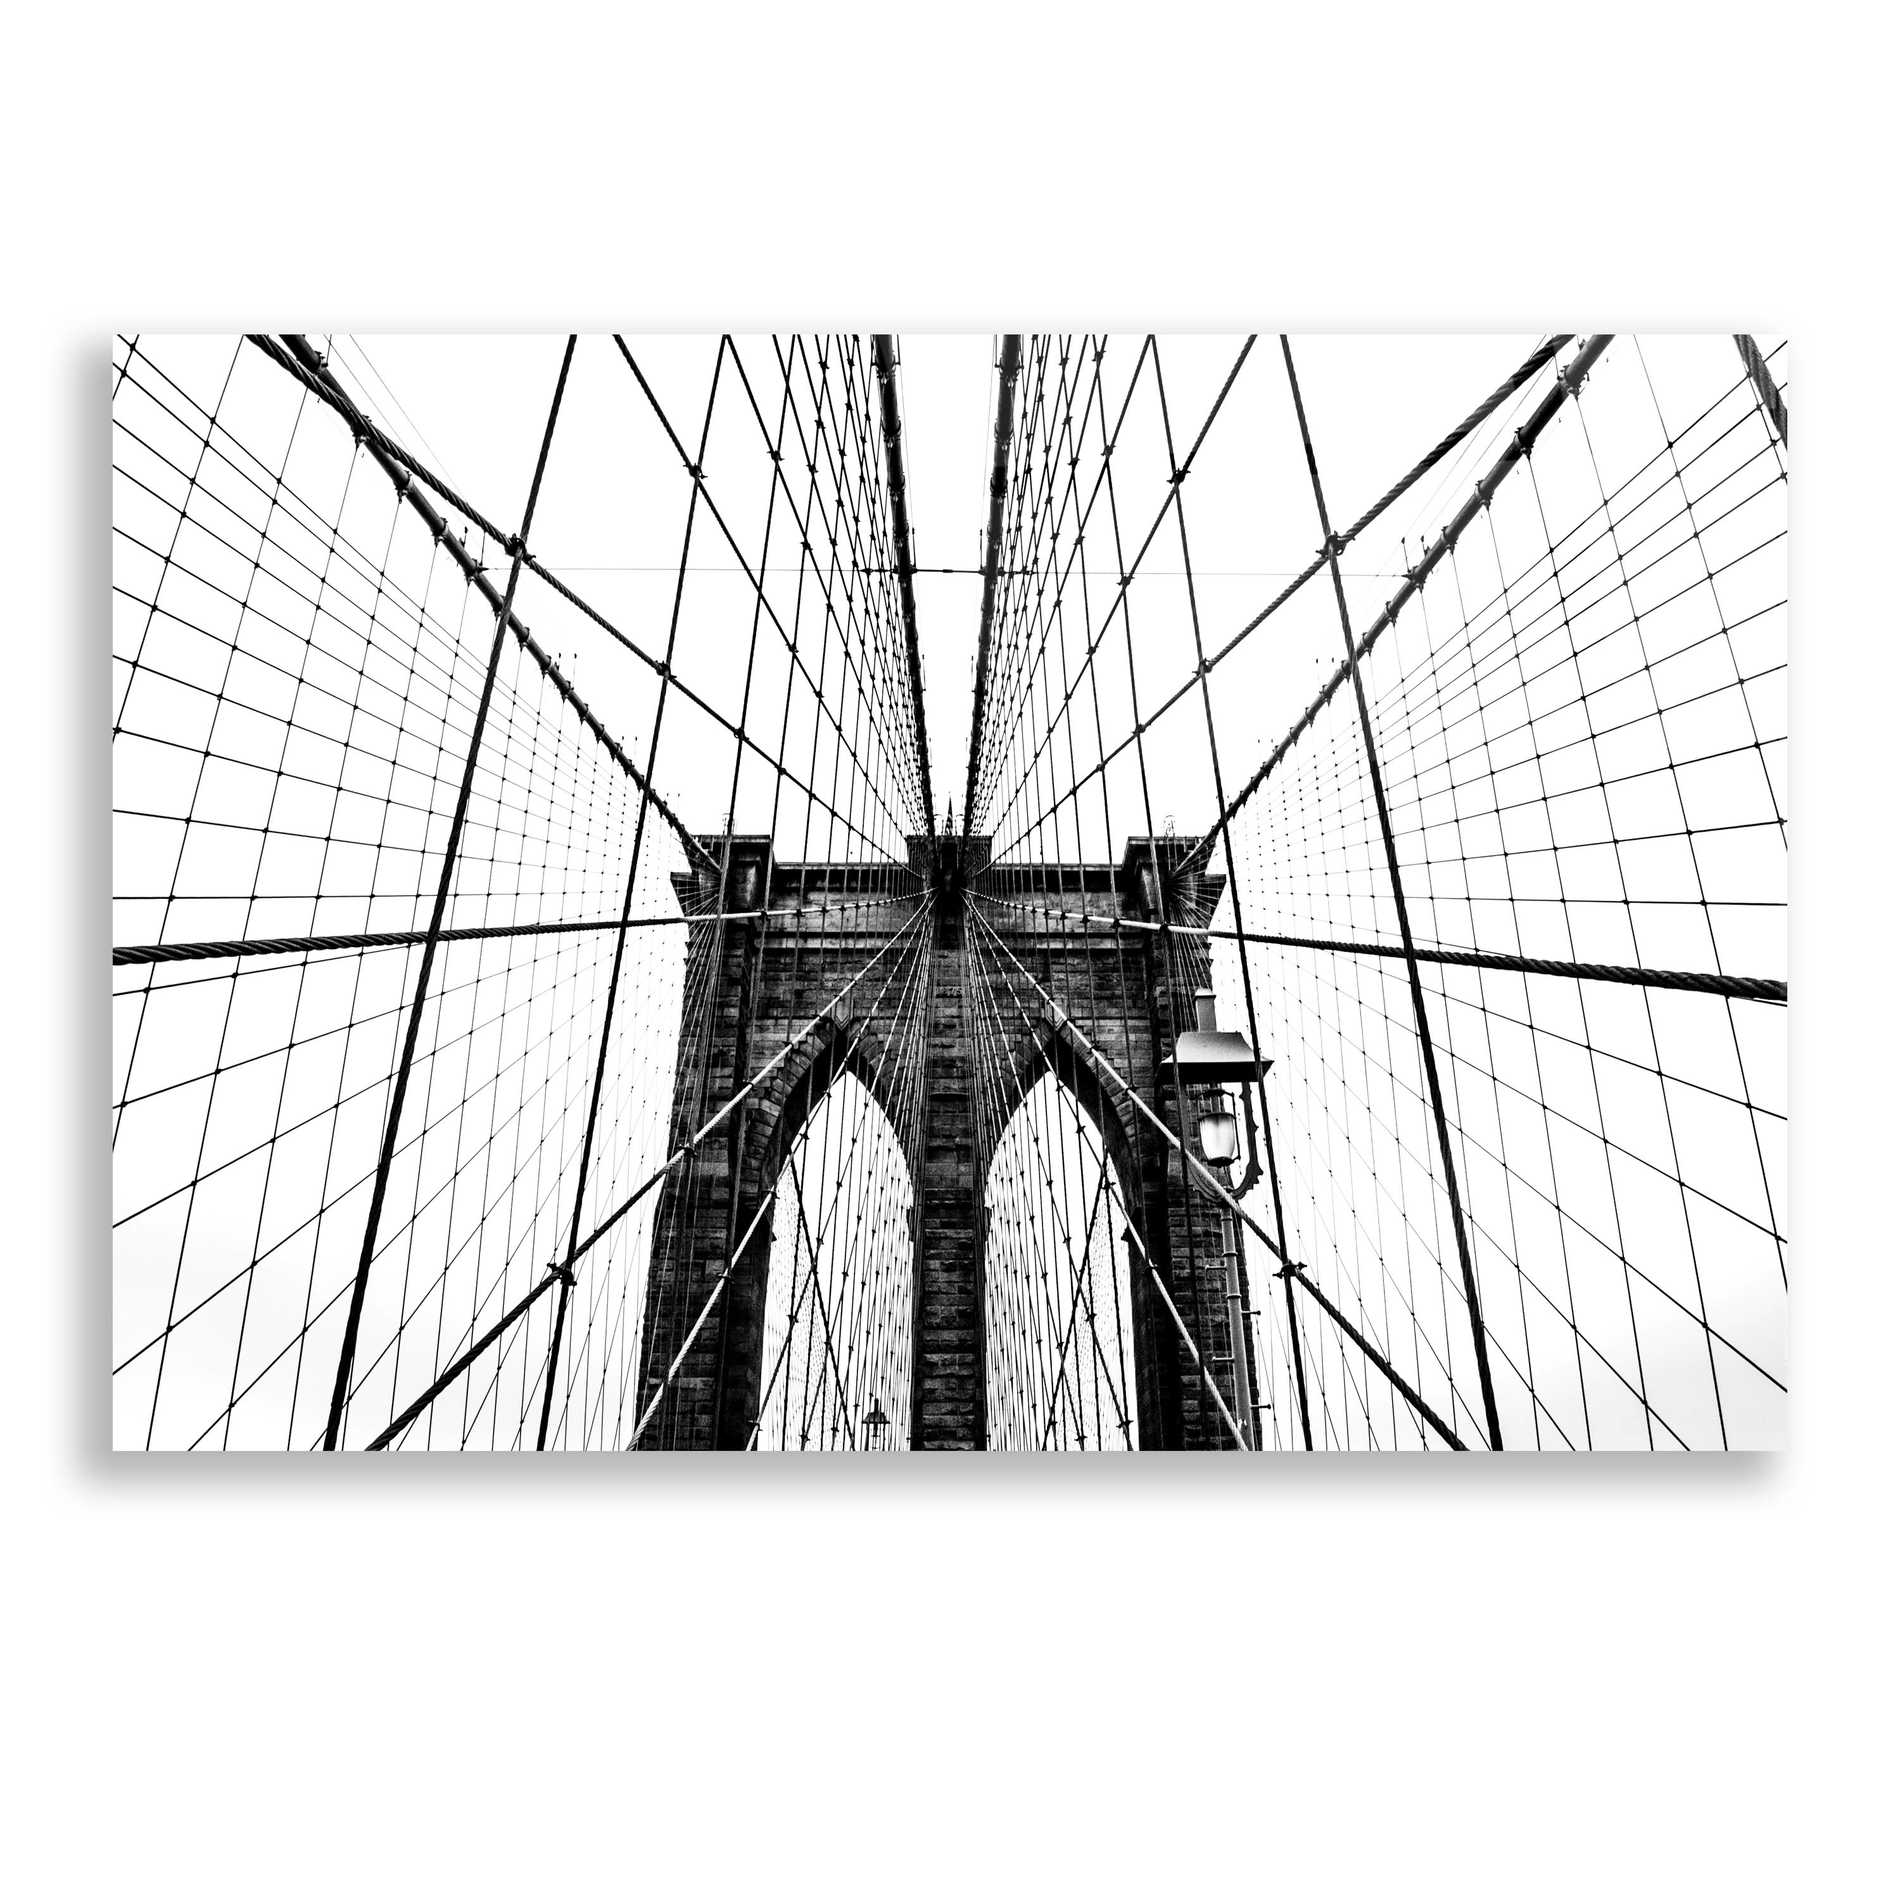 Epic Art 'Brooklyn Bridge Web' by Nicklas Gustafsson Acrylic Glass Wall Art,24x16